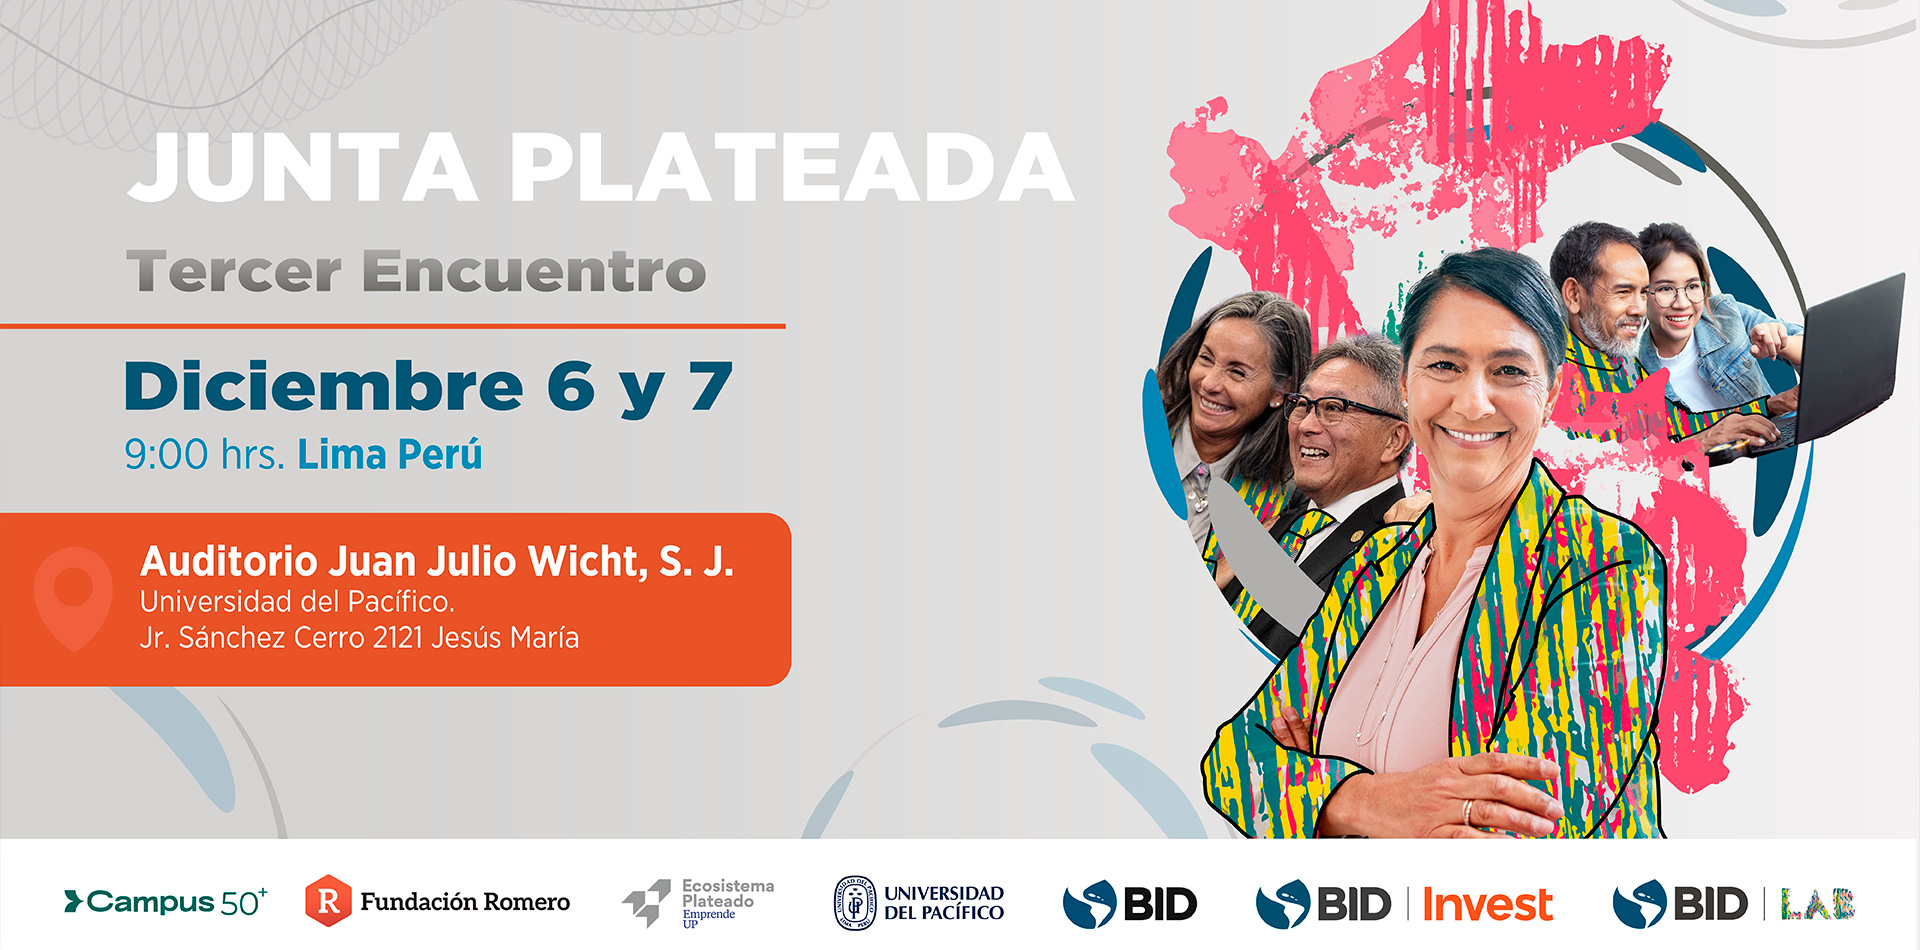 Junta Plateada uno de los eventos de Economía Plateada más importantes de América Latina y el Caribe Diciembre 6 y 7 9:00 hrs. Lima Perú